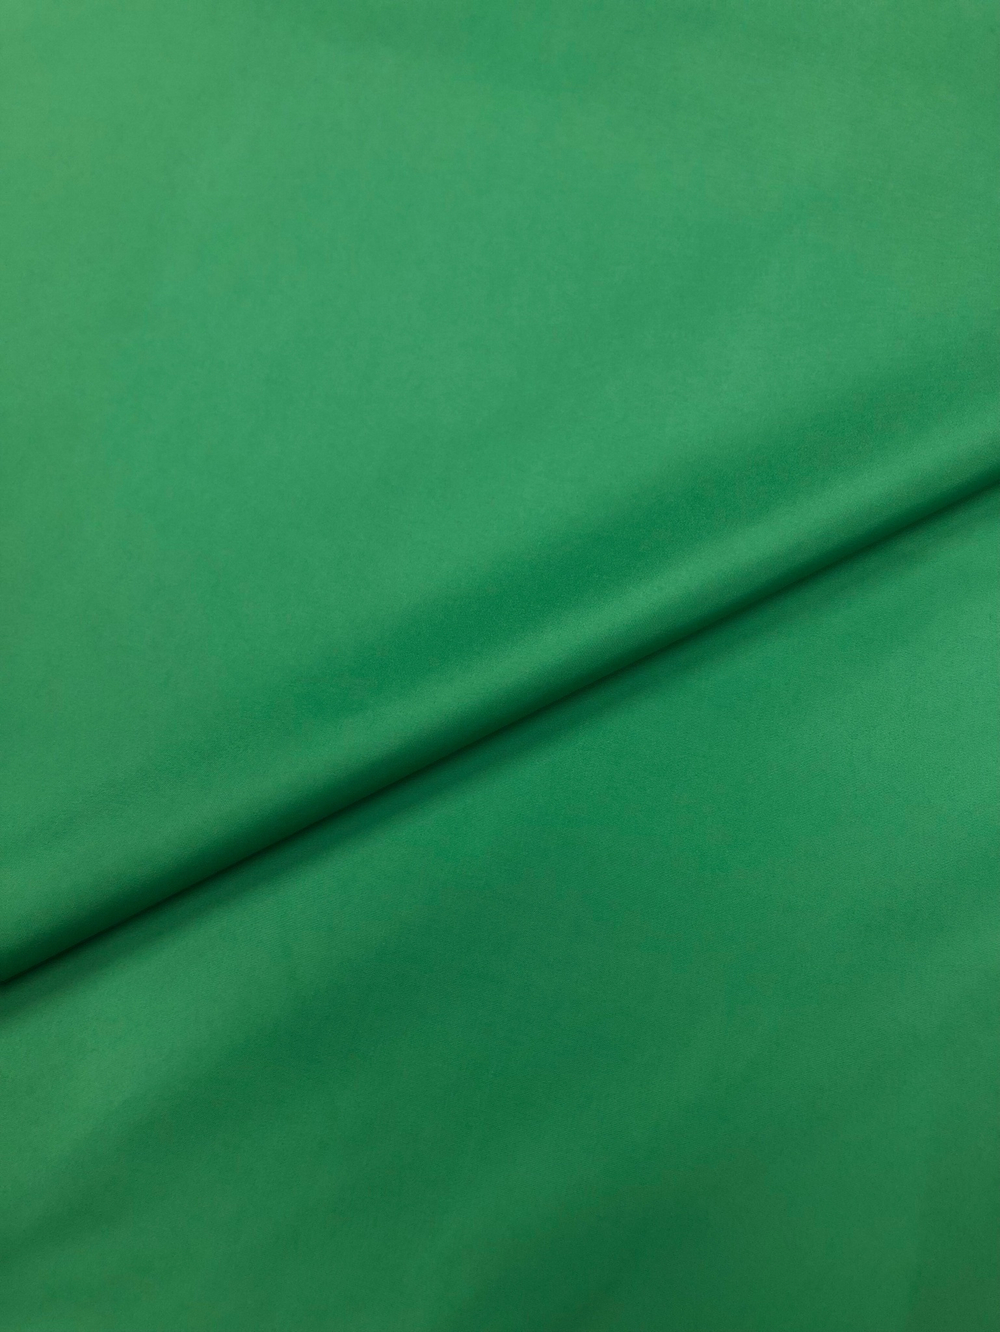 Ткань плащевая зеленый, артикул 327793